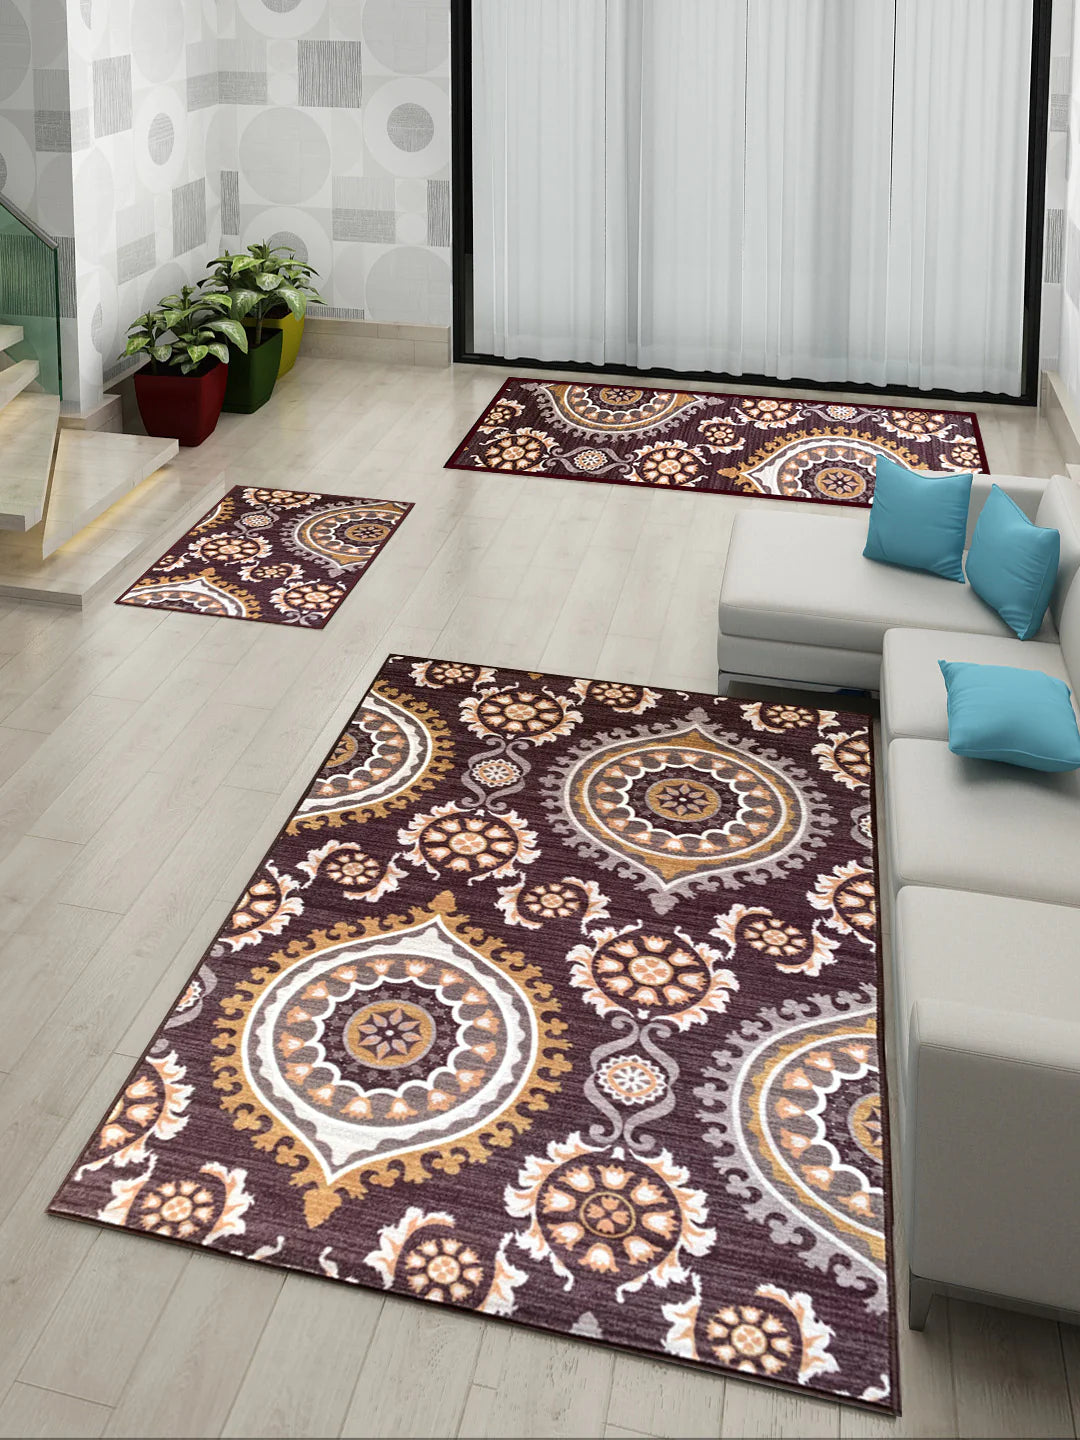 Athom Living Persian Brown Premium Anti Slip Printed Doormat, Runner & Carpet Set